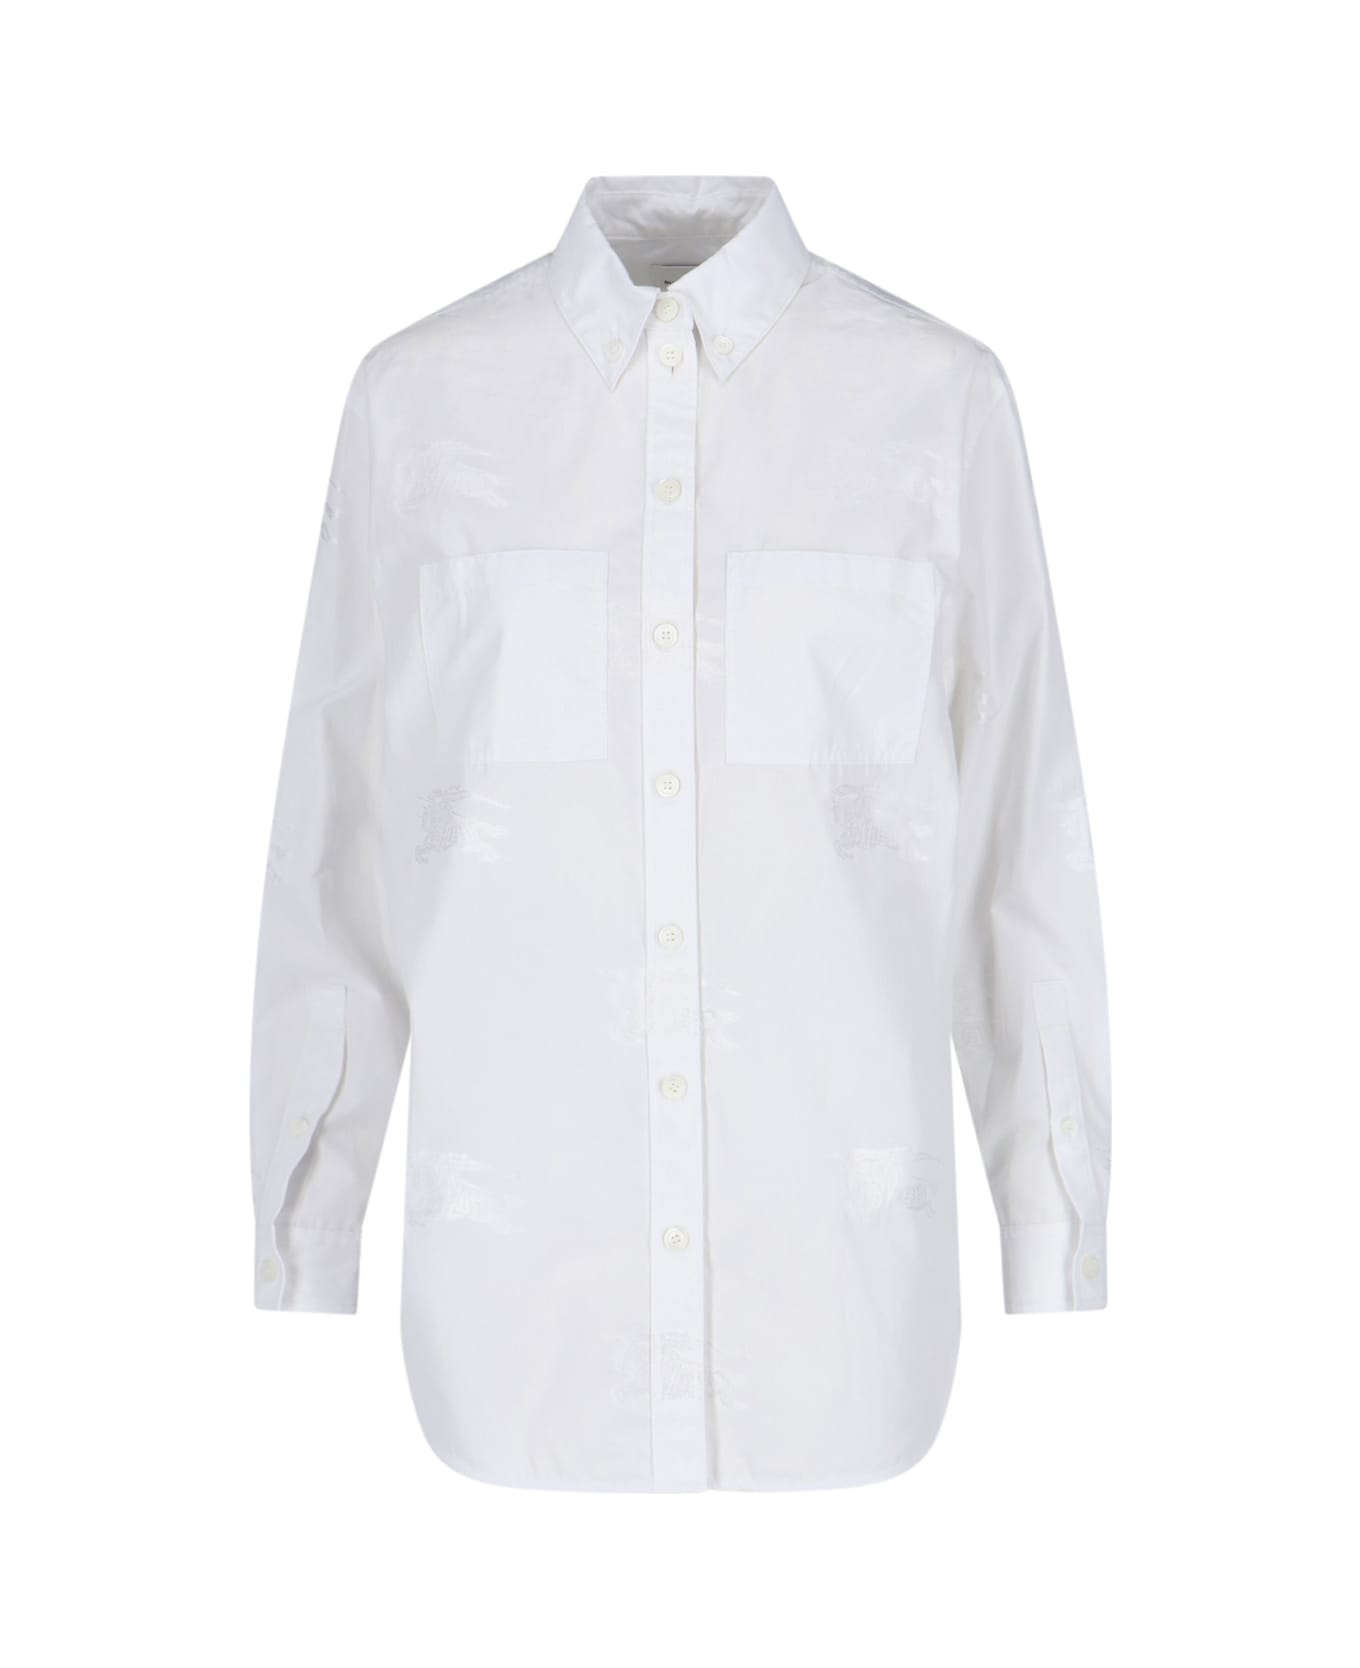 Burberry Ivanna Shirt - White